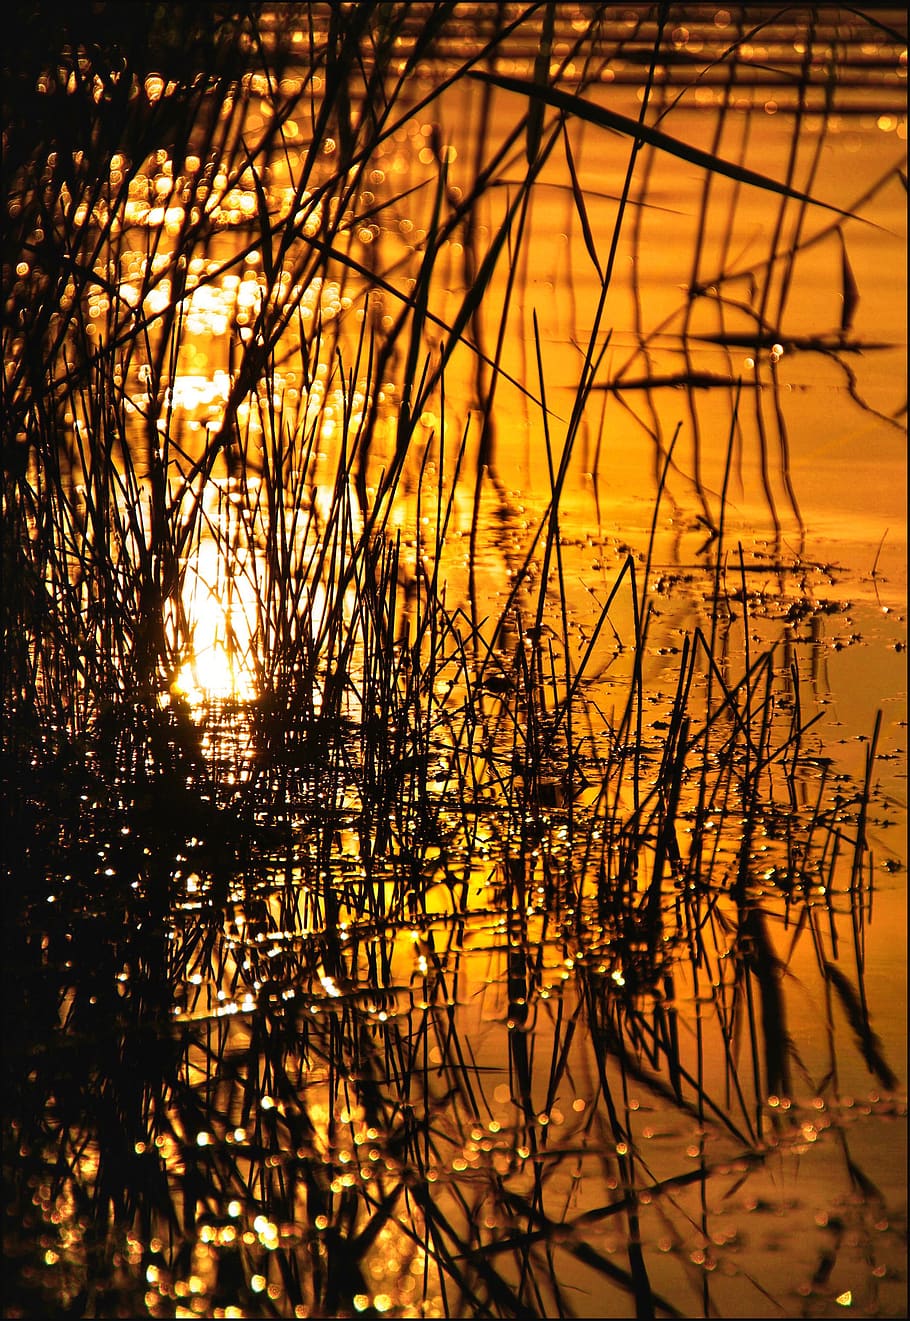 sunset, reed, lake, water reflection, reflection, light, heat, sunshine, romantic, wave